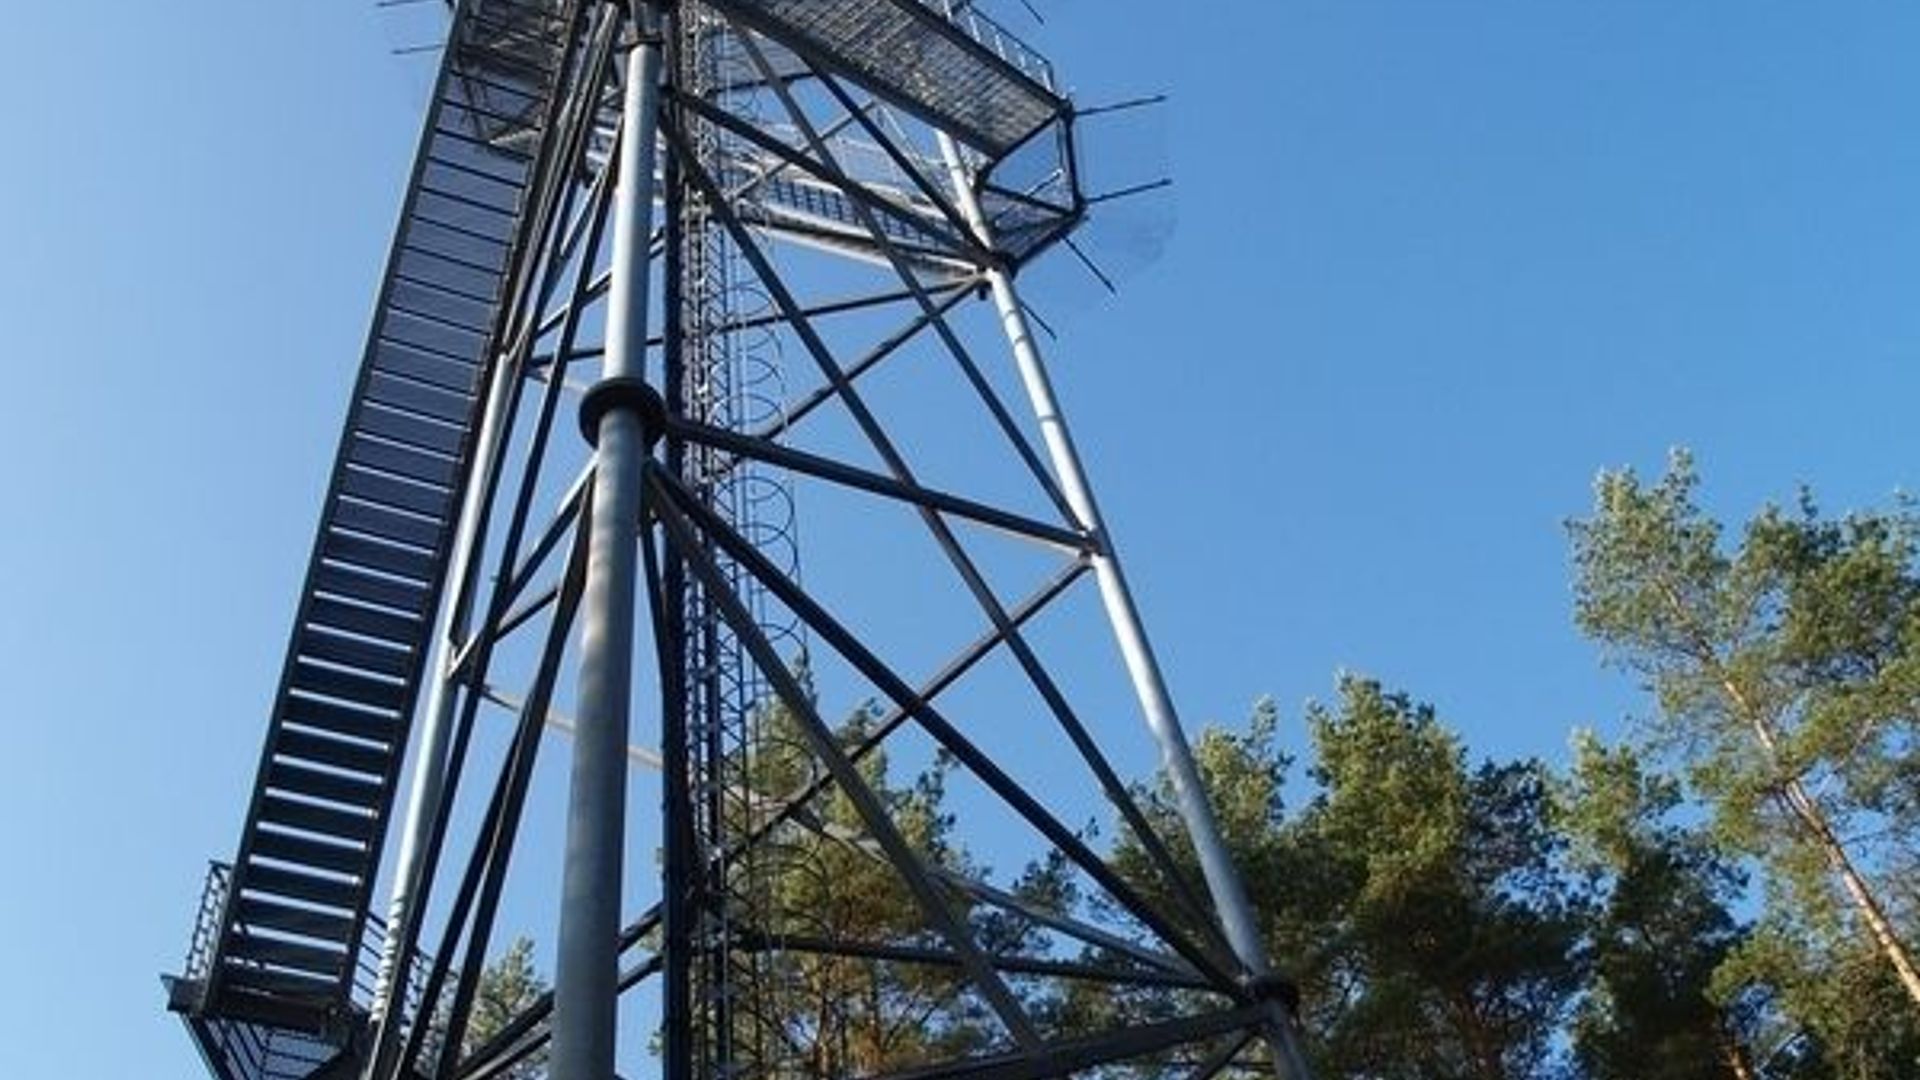 Šiliniškės (Ginučiai) Observation Tower